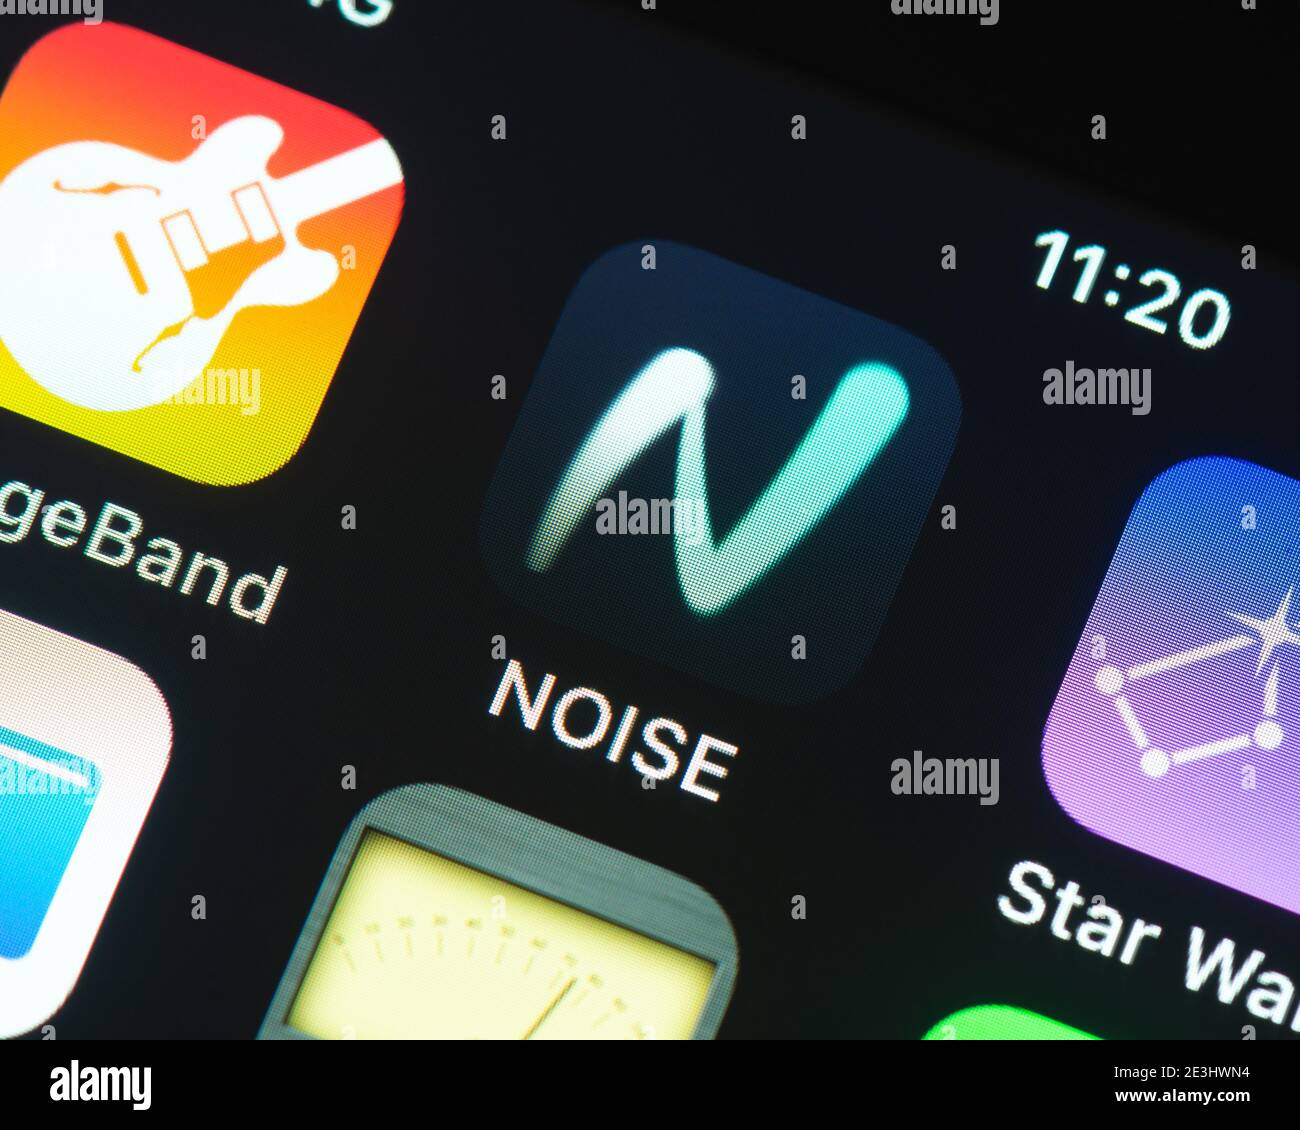 Icône de l'application bruit sur l'écran de l'iPhone d'Apple. Noise est une application de création musicale pour appareils iOS et Android développée par Roli. Banque D'Images